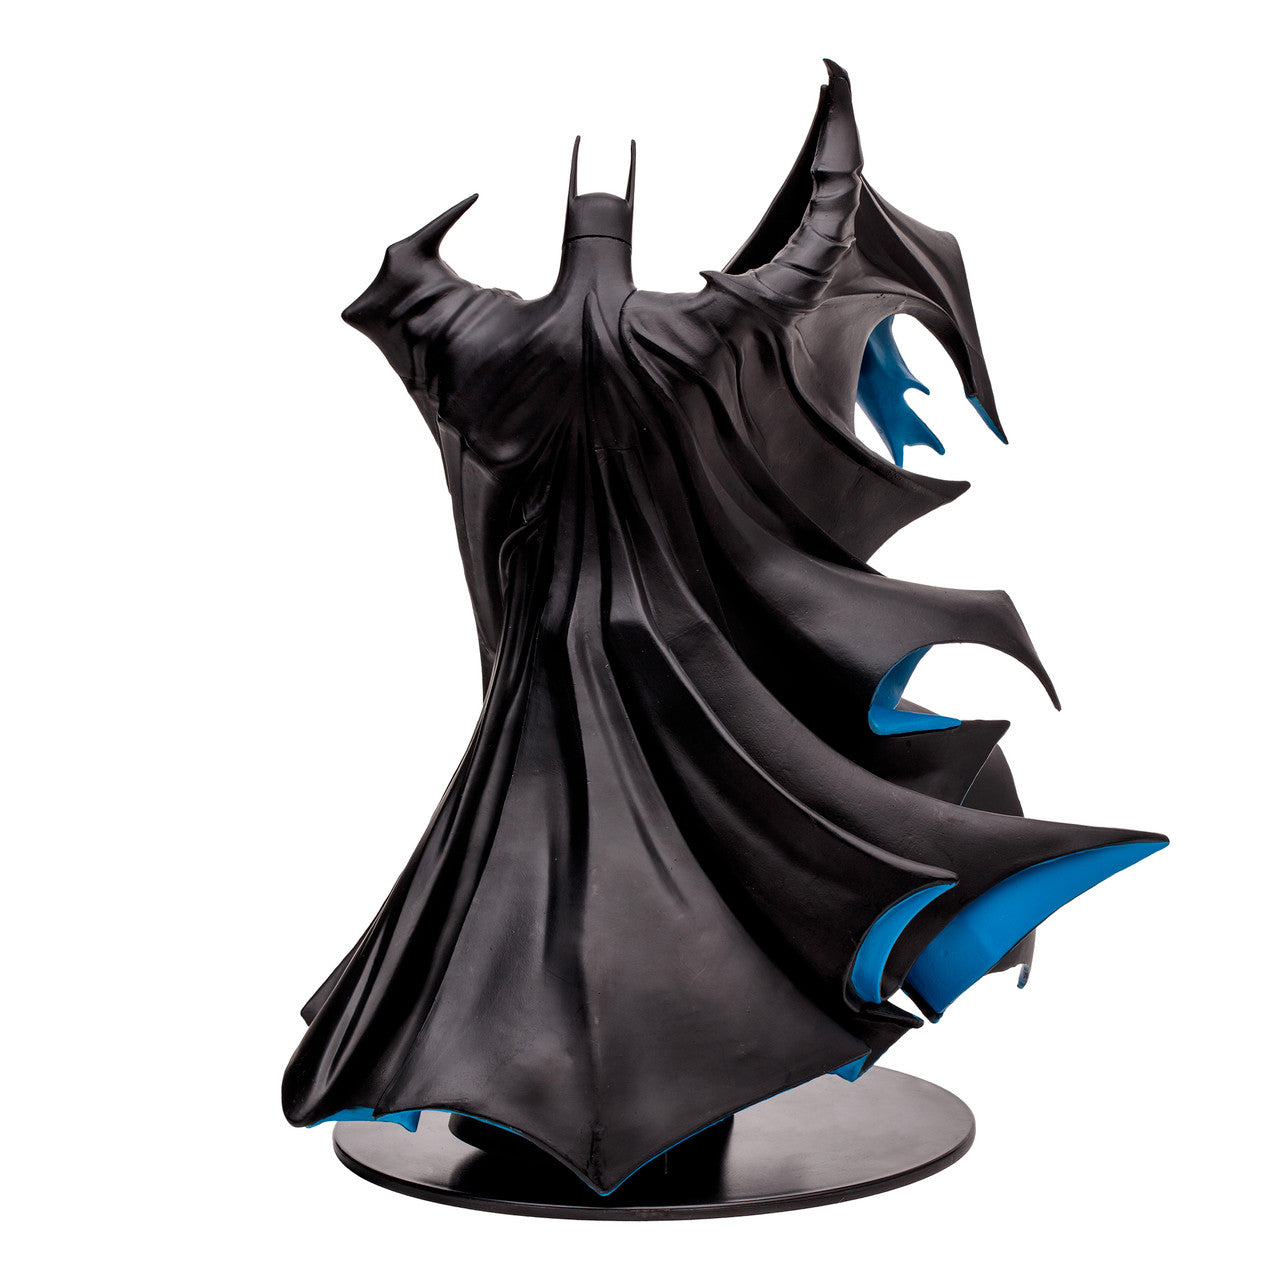 Batman by Todd McFarlane 1:8 Scale PVC Statue (Black)